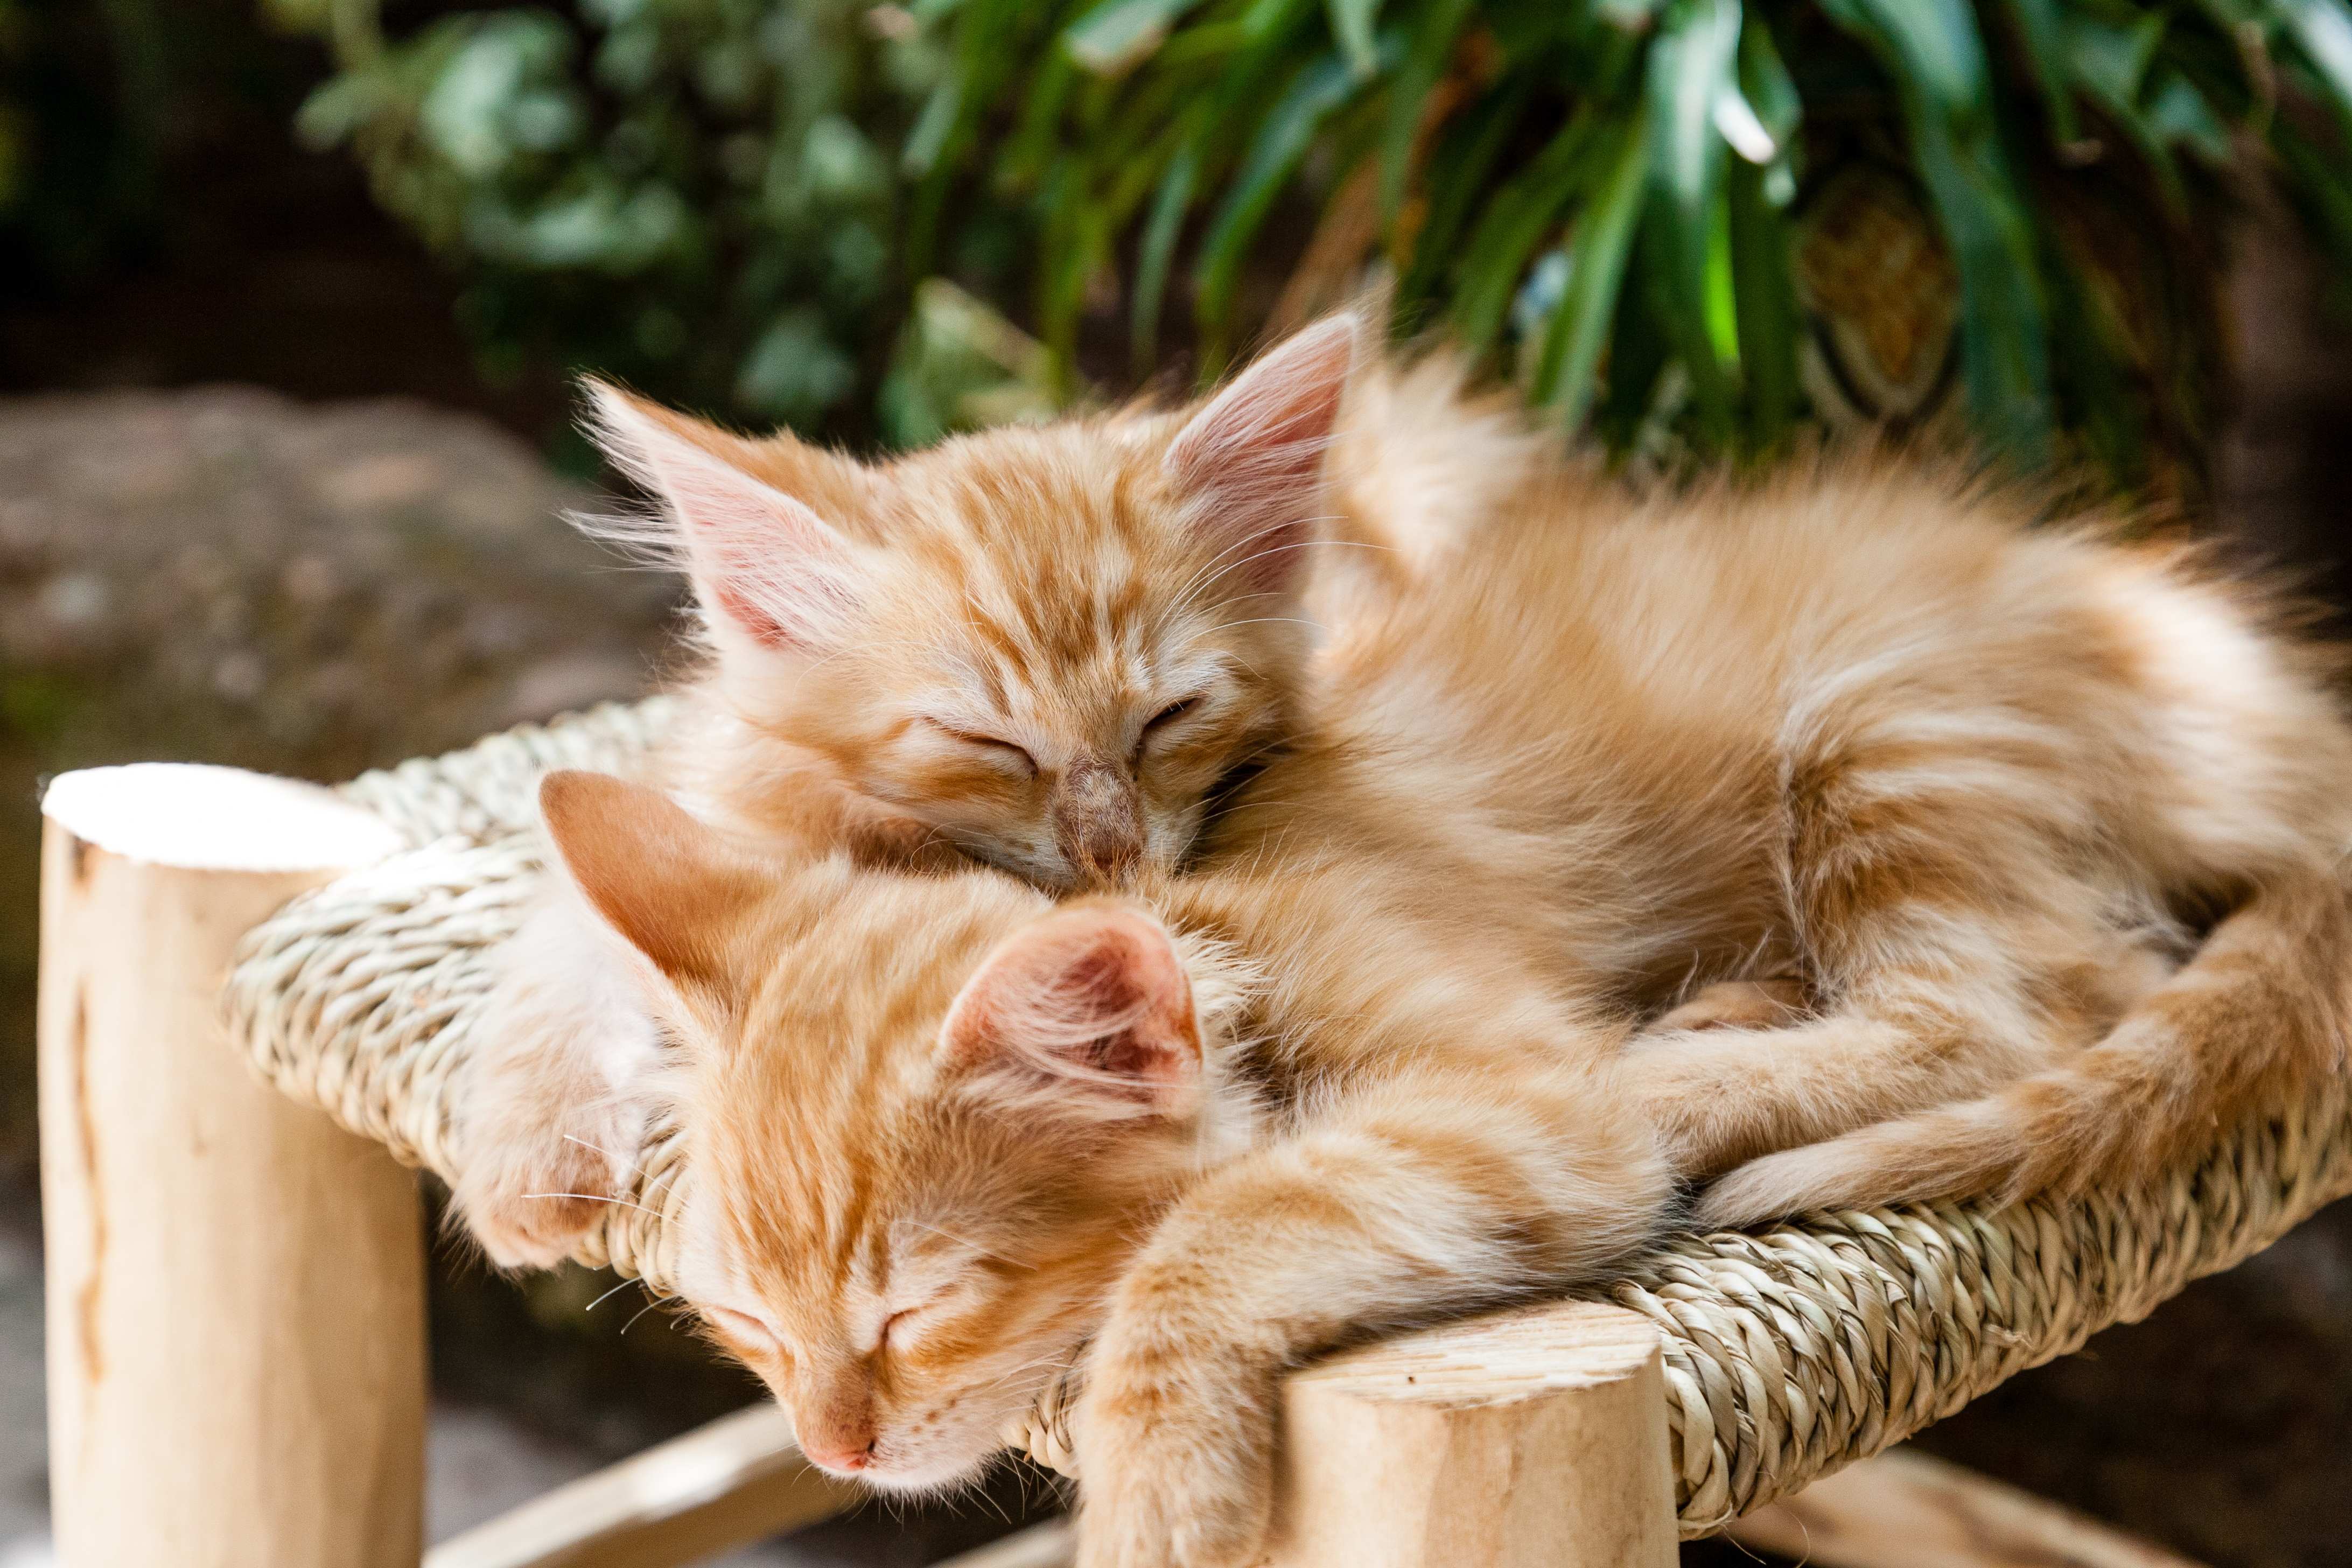 くっついて寝ている2匹の子猫